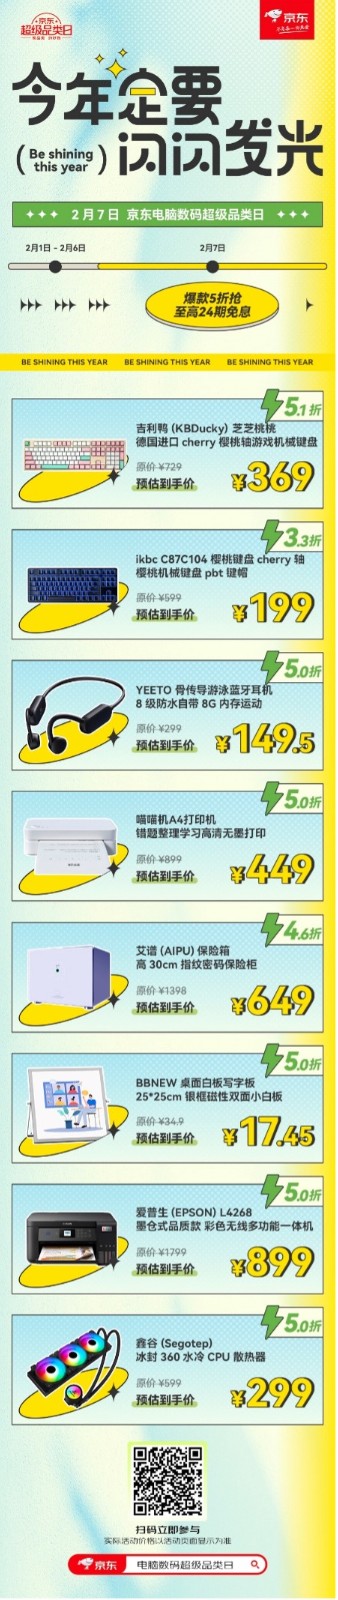 为了让消费者真的划算 京东电脑数码超级品类日爆款清单新鲜出炉